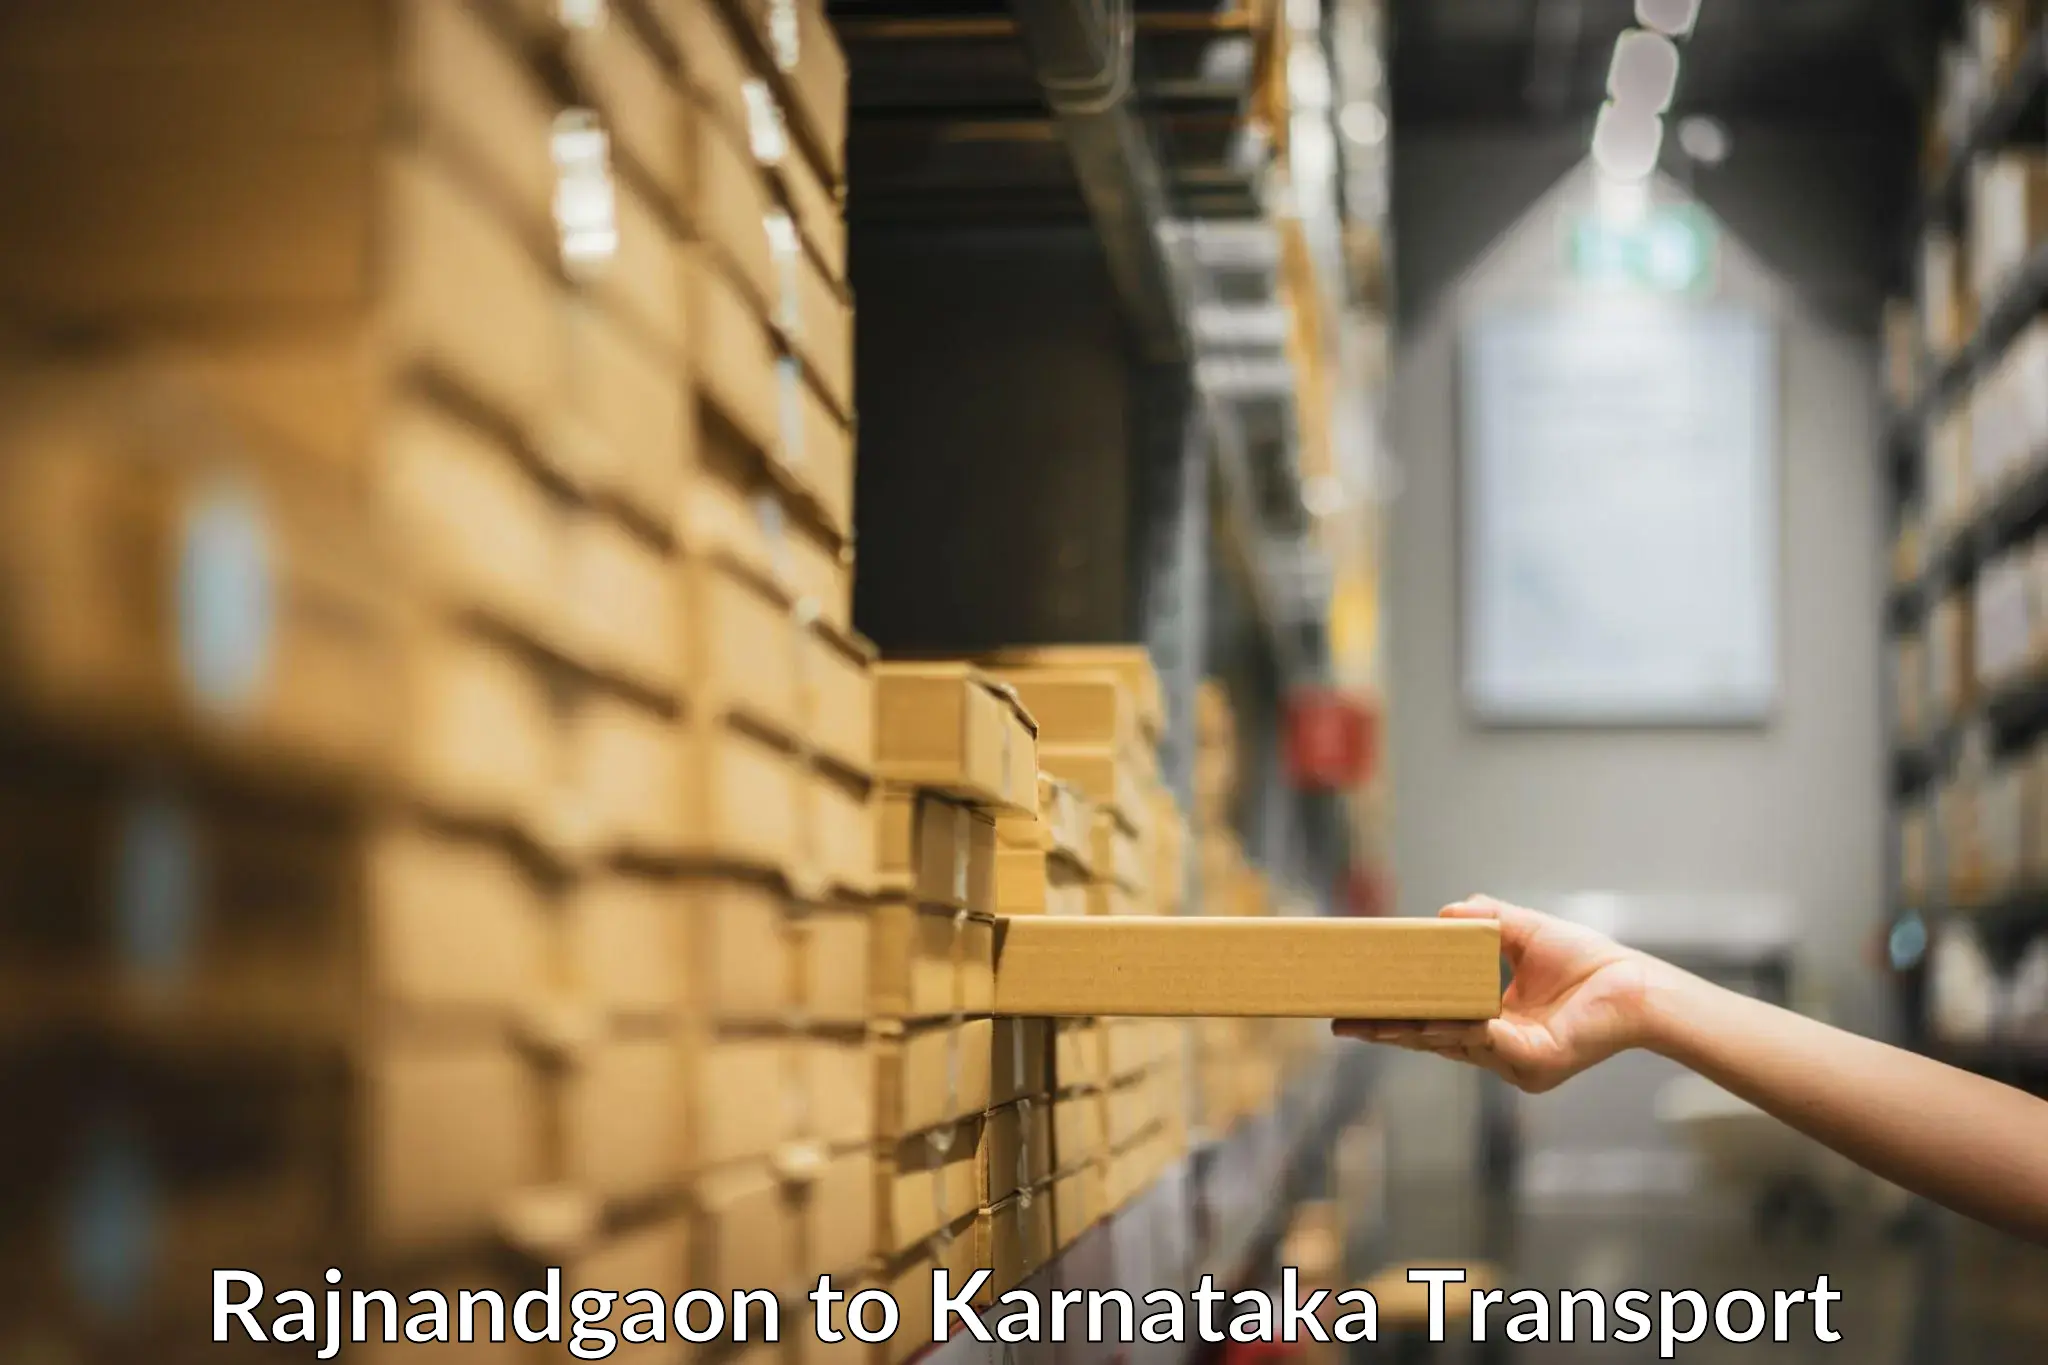 Online transport Rajnandgaon to Karnataka